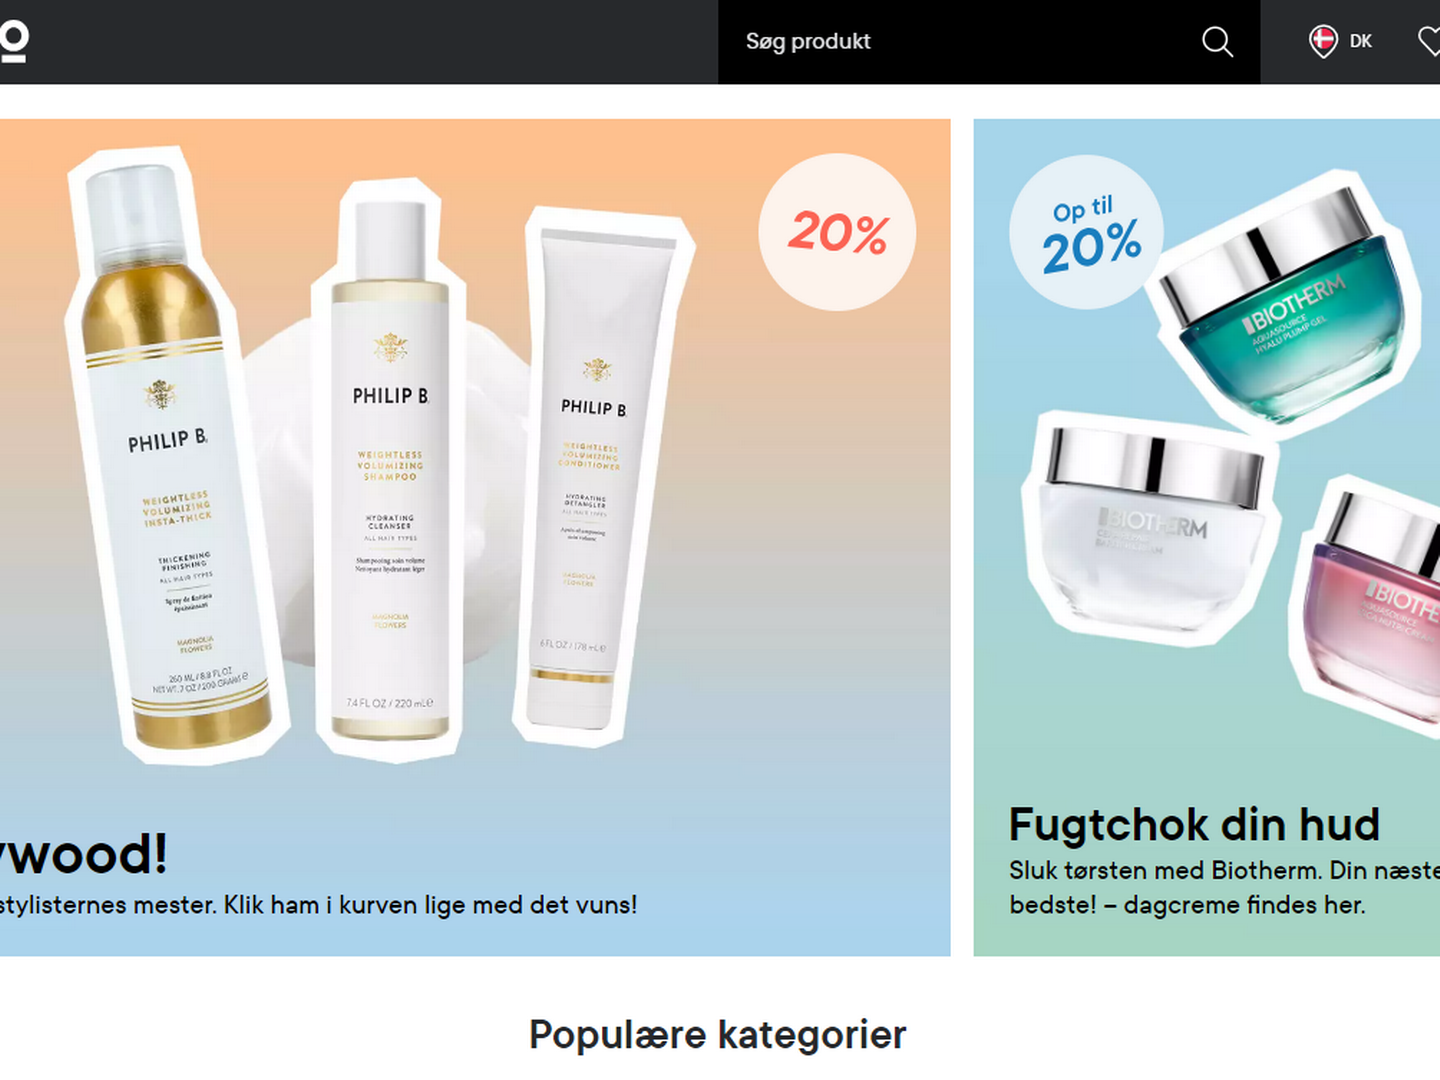 Lyko har siden 2019 været til stede på det danske marked med onlinesalg. | Foto: Screenshot/Lyko